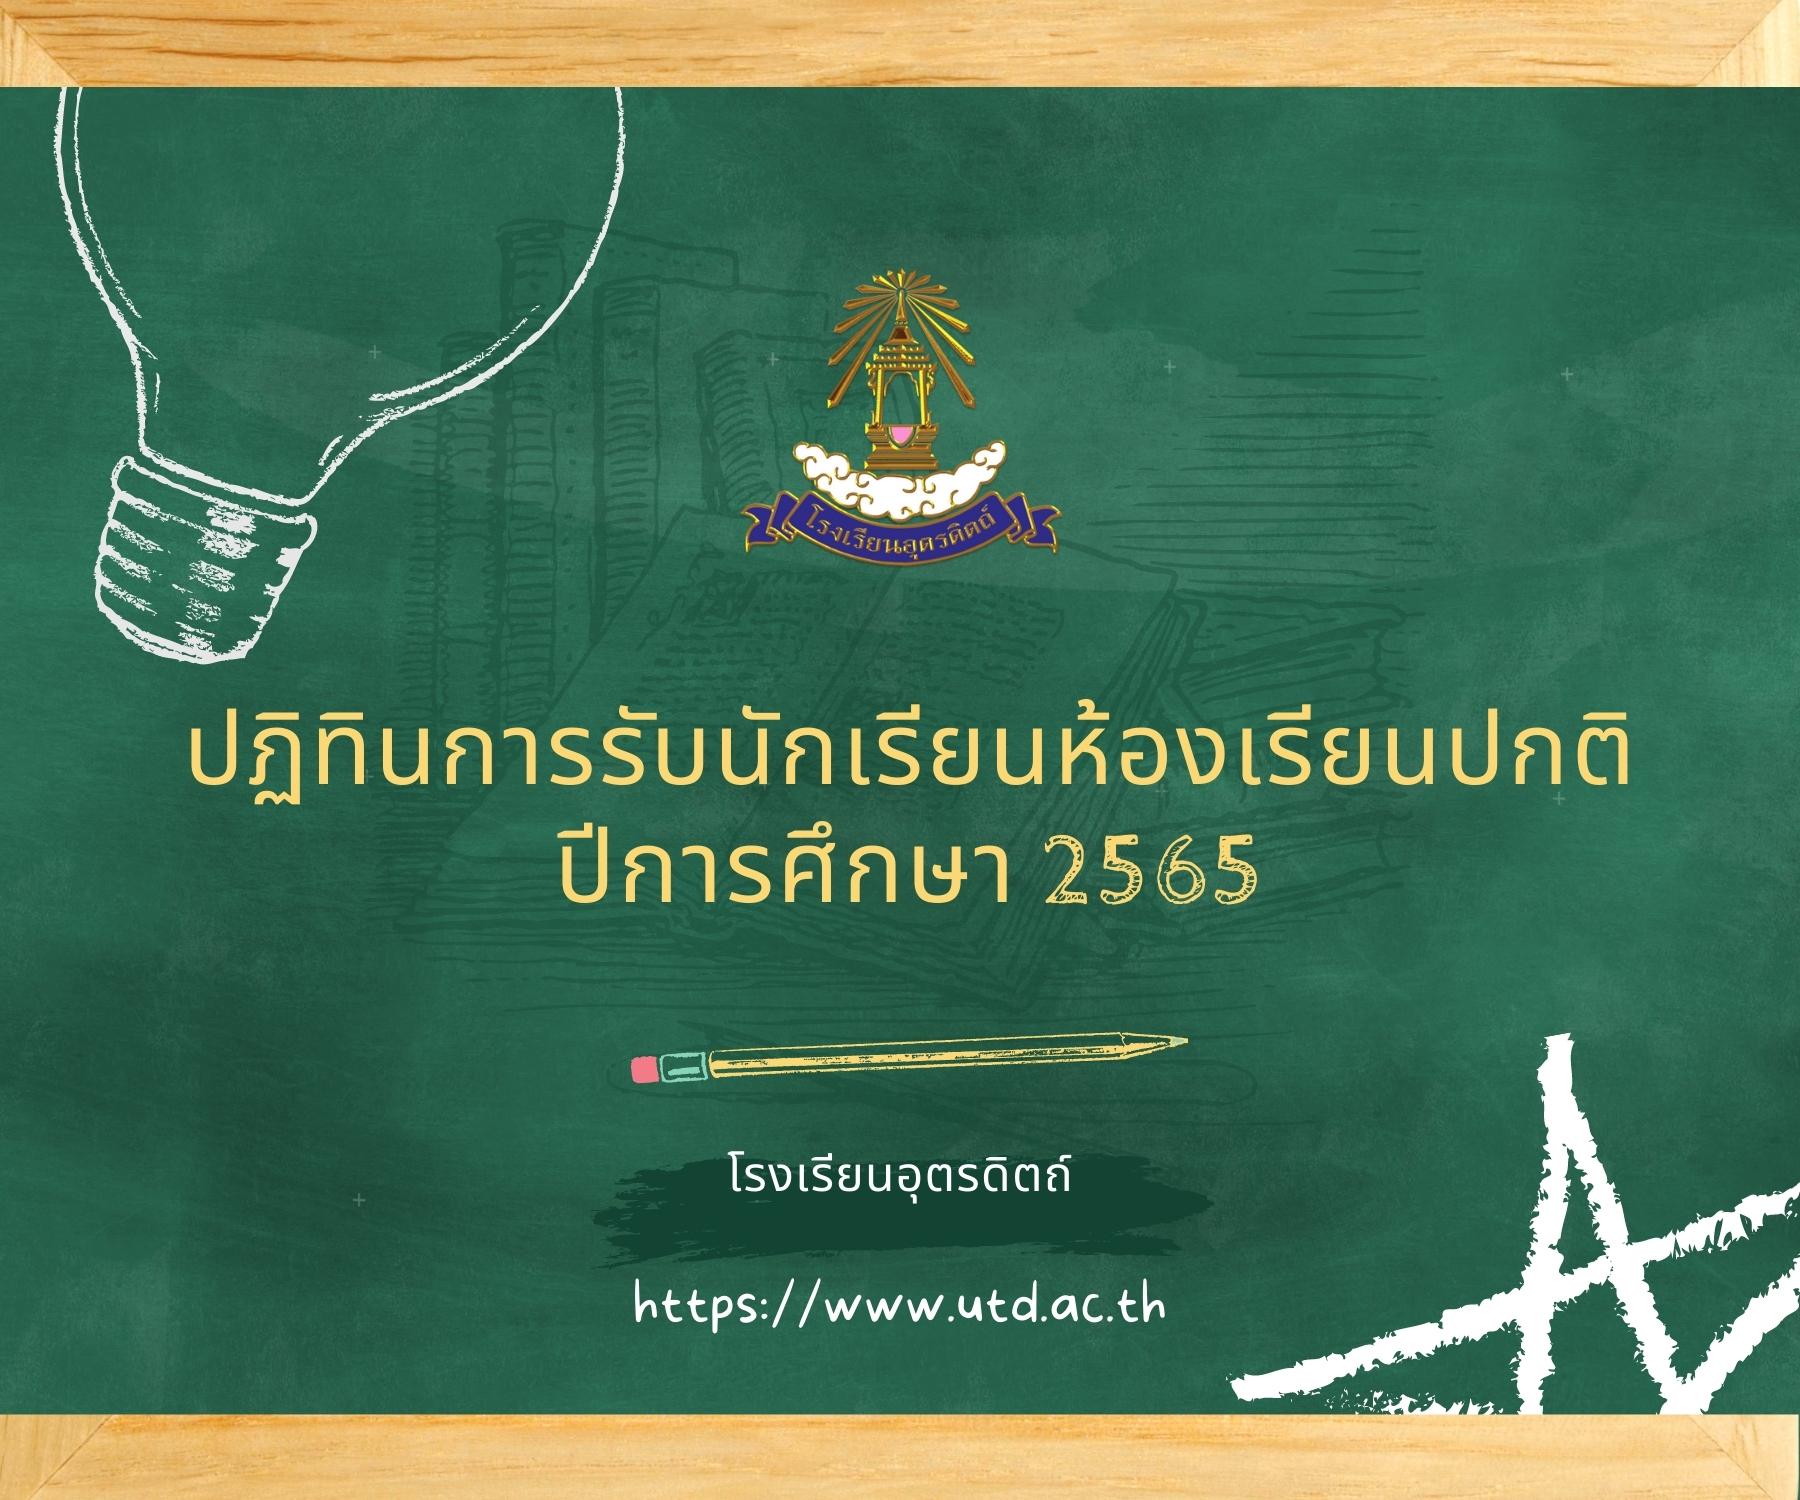 ปฏิทินการรับนักเรียนห้องเรียนปกติ ปีการศึกษา 2565